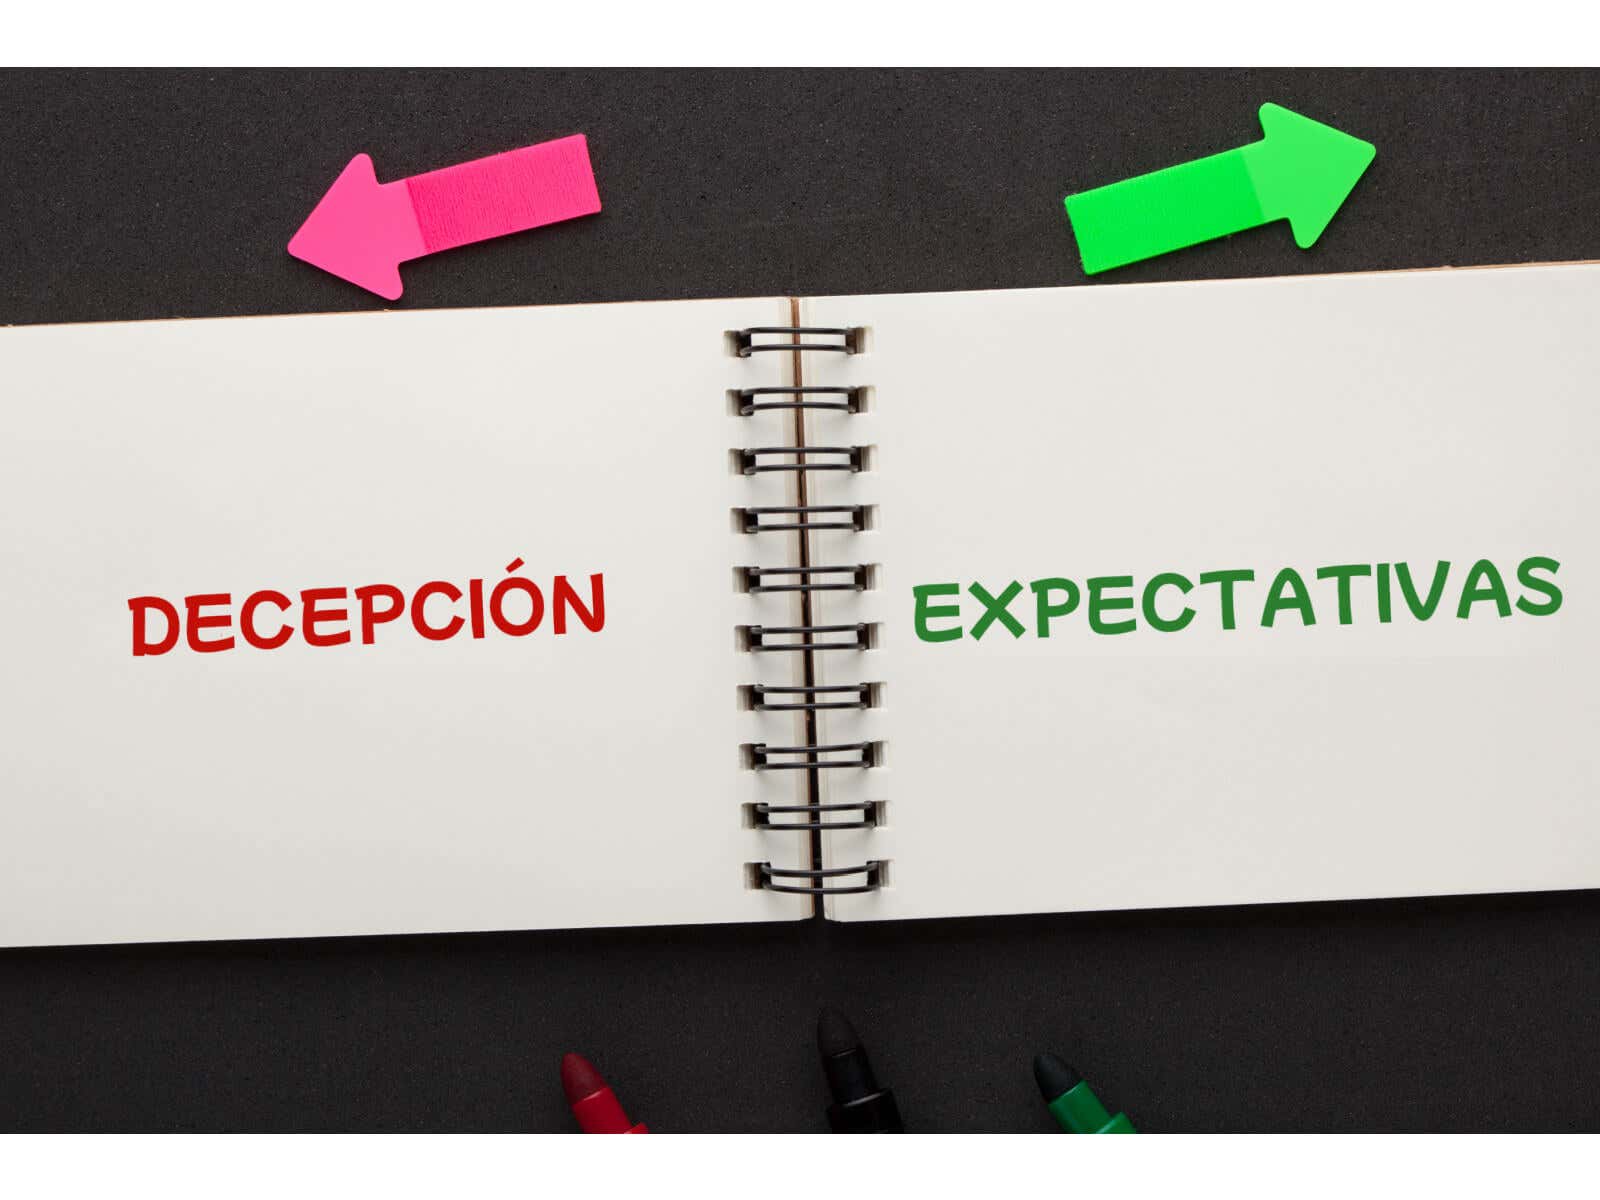 Las expectativas no siempre conllevan decepción